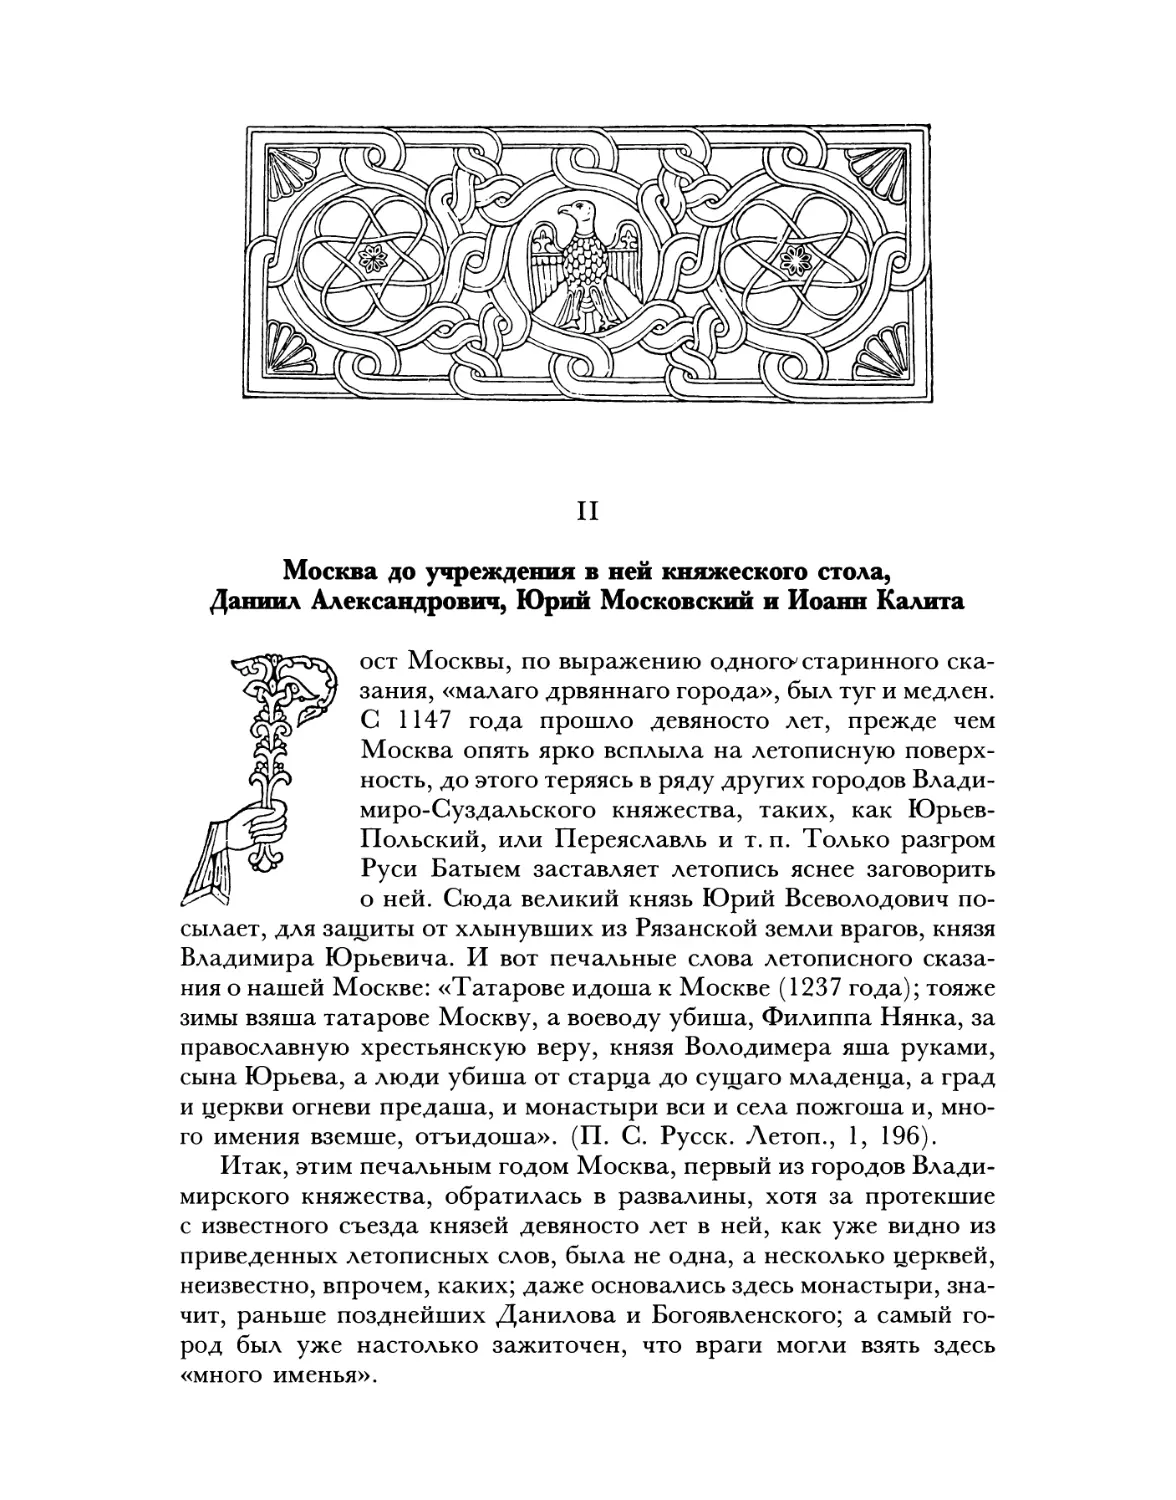 Москва и учреждение в ней княжеского стола, Даниил Александрович, Юрий Московский и Иоанн Калита